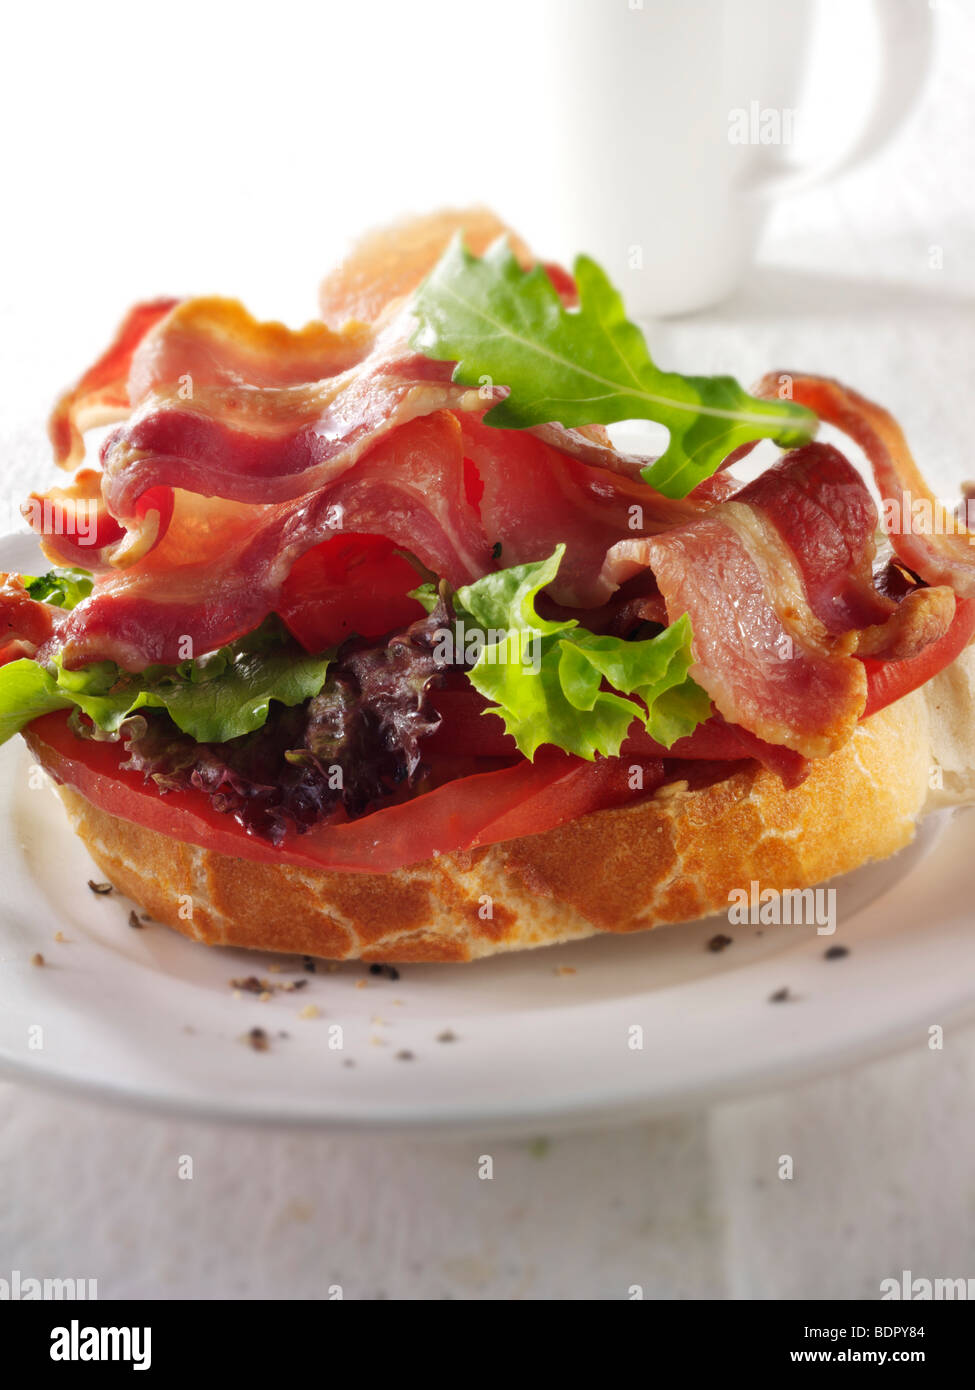 Et la tomate, salade au lard, sandwich BLT Banque D'Images